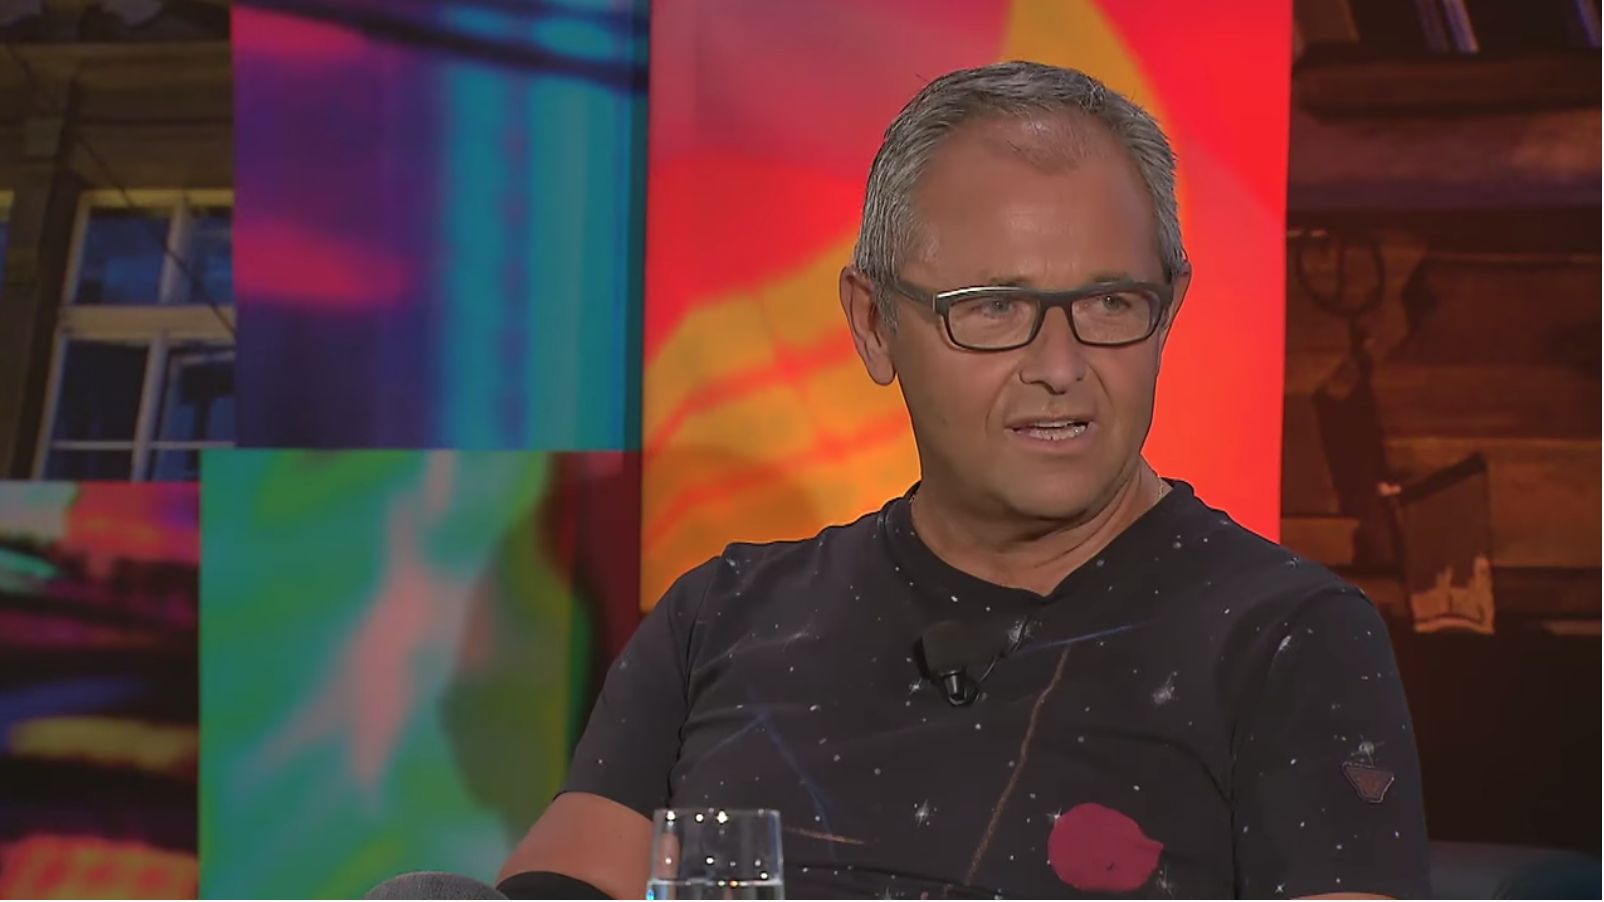 Jan Mühlfeit hostem pořadu 7 pádů HD